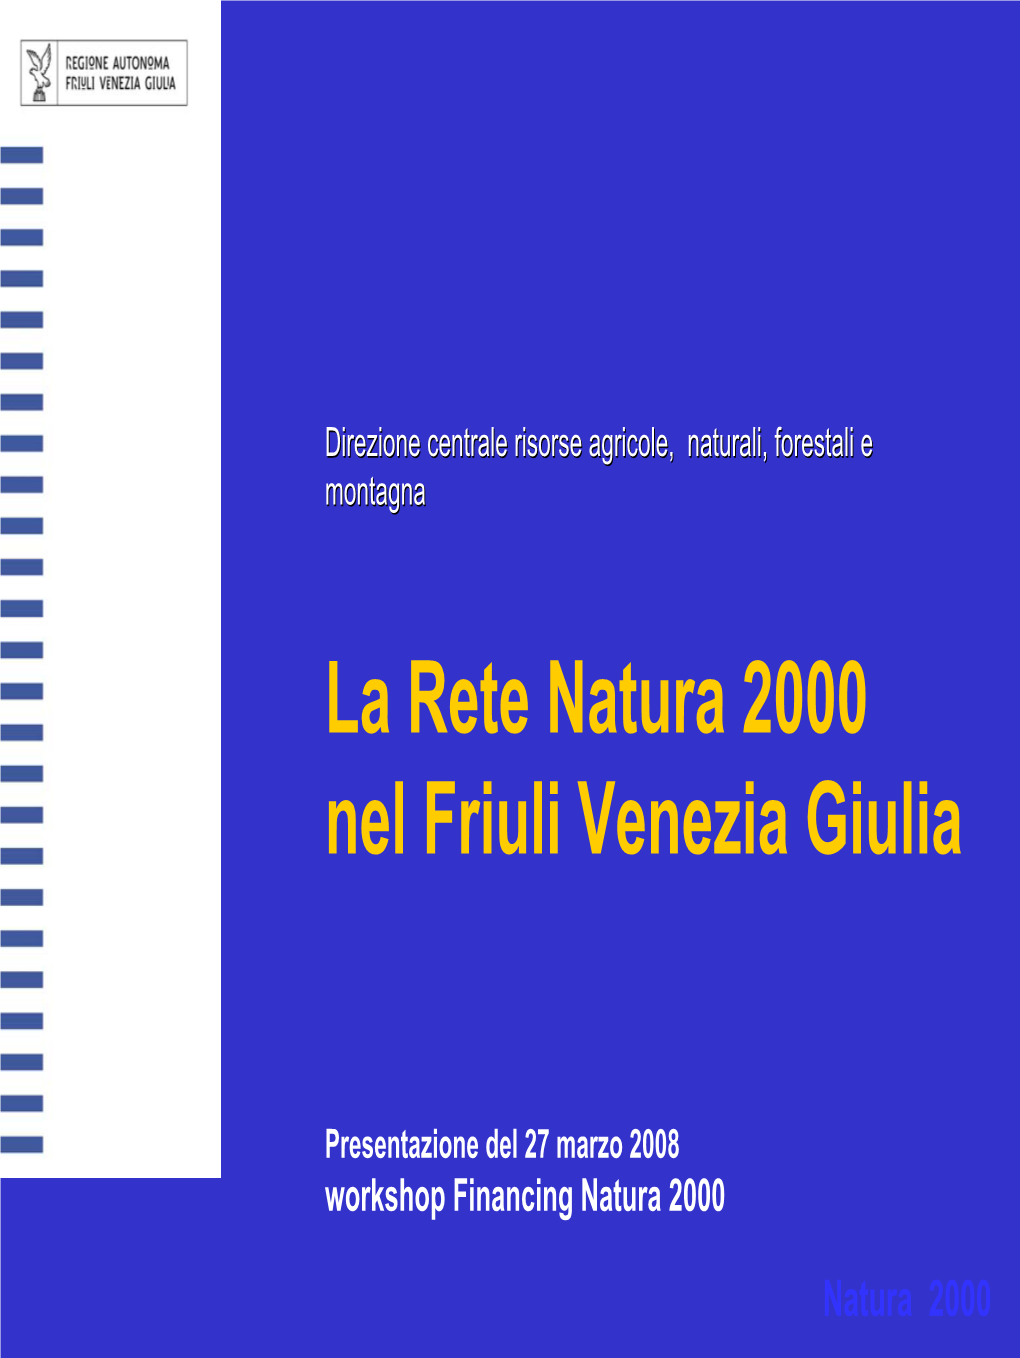 La Rete Natura 2000 in Friuli Venezia Giulia Marzo 2008